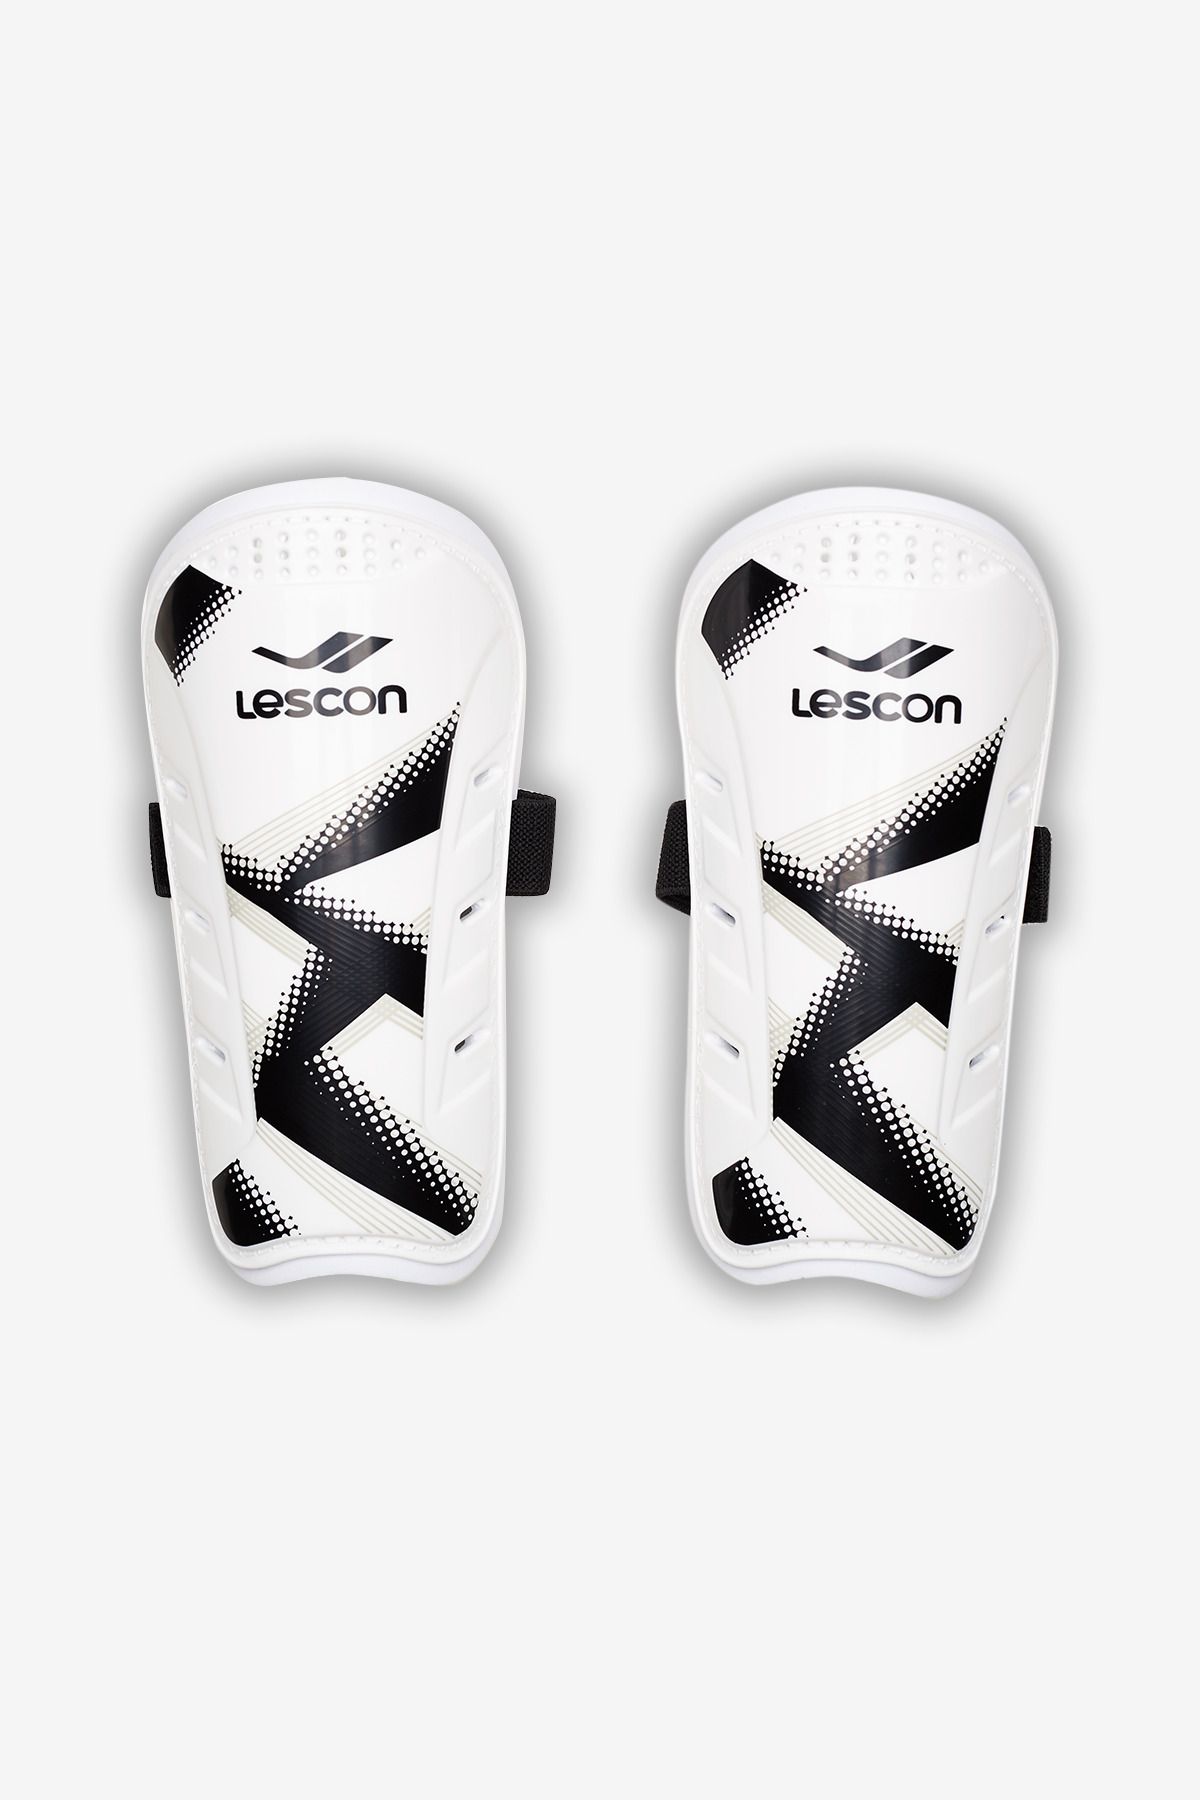 Lescon La-3720 Tekmelik